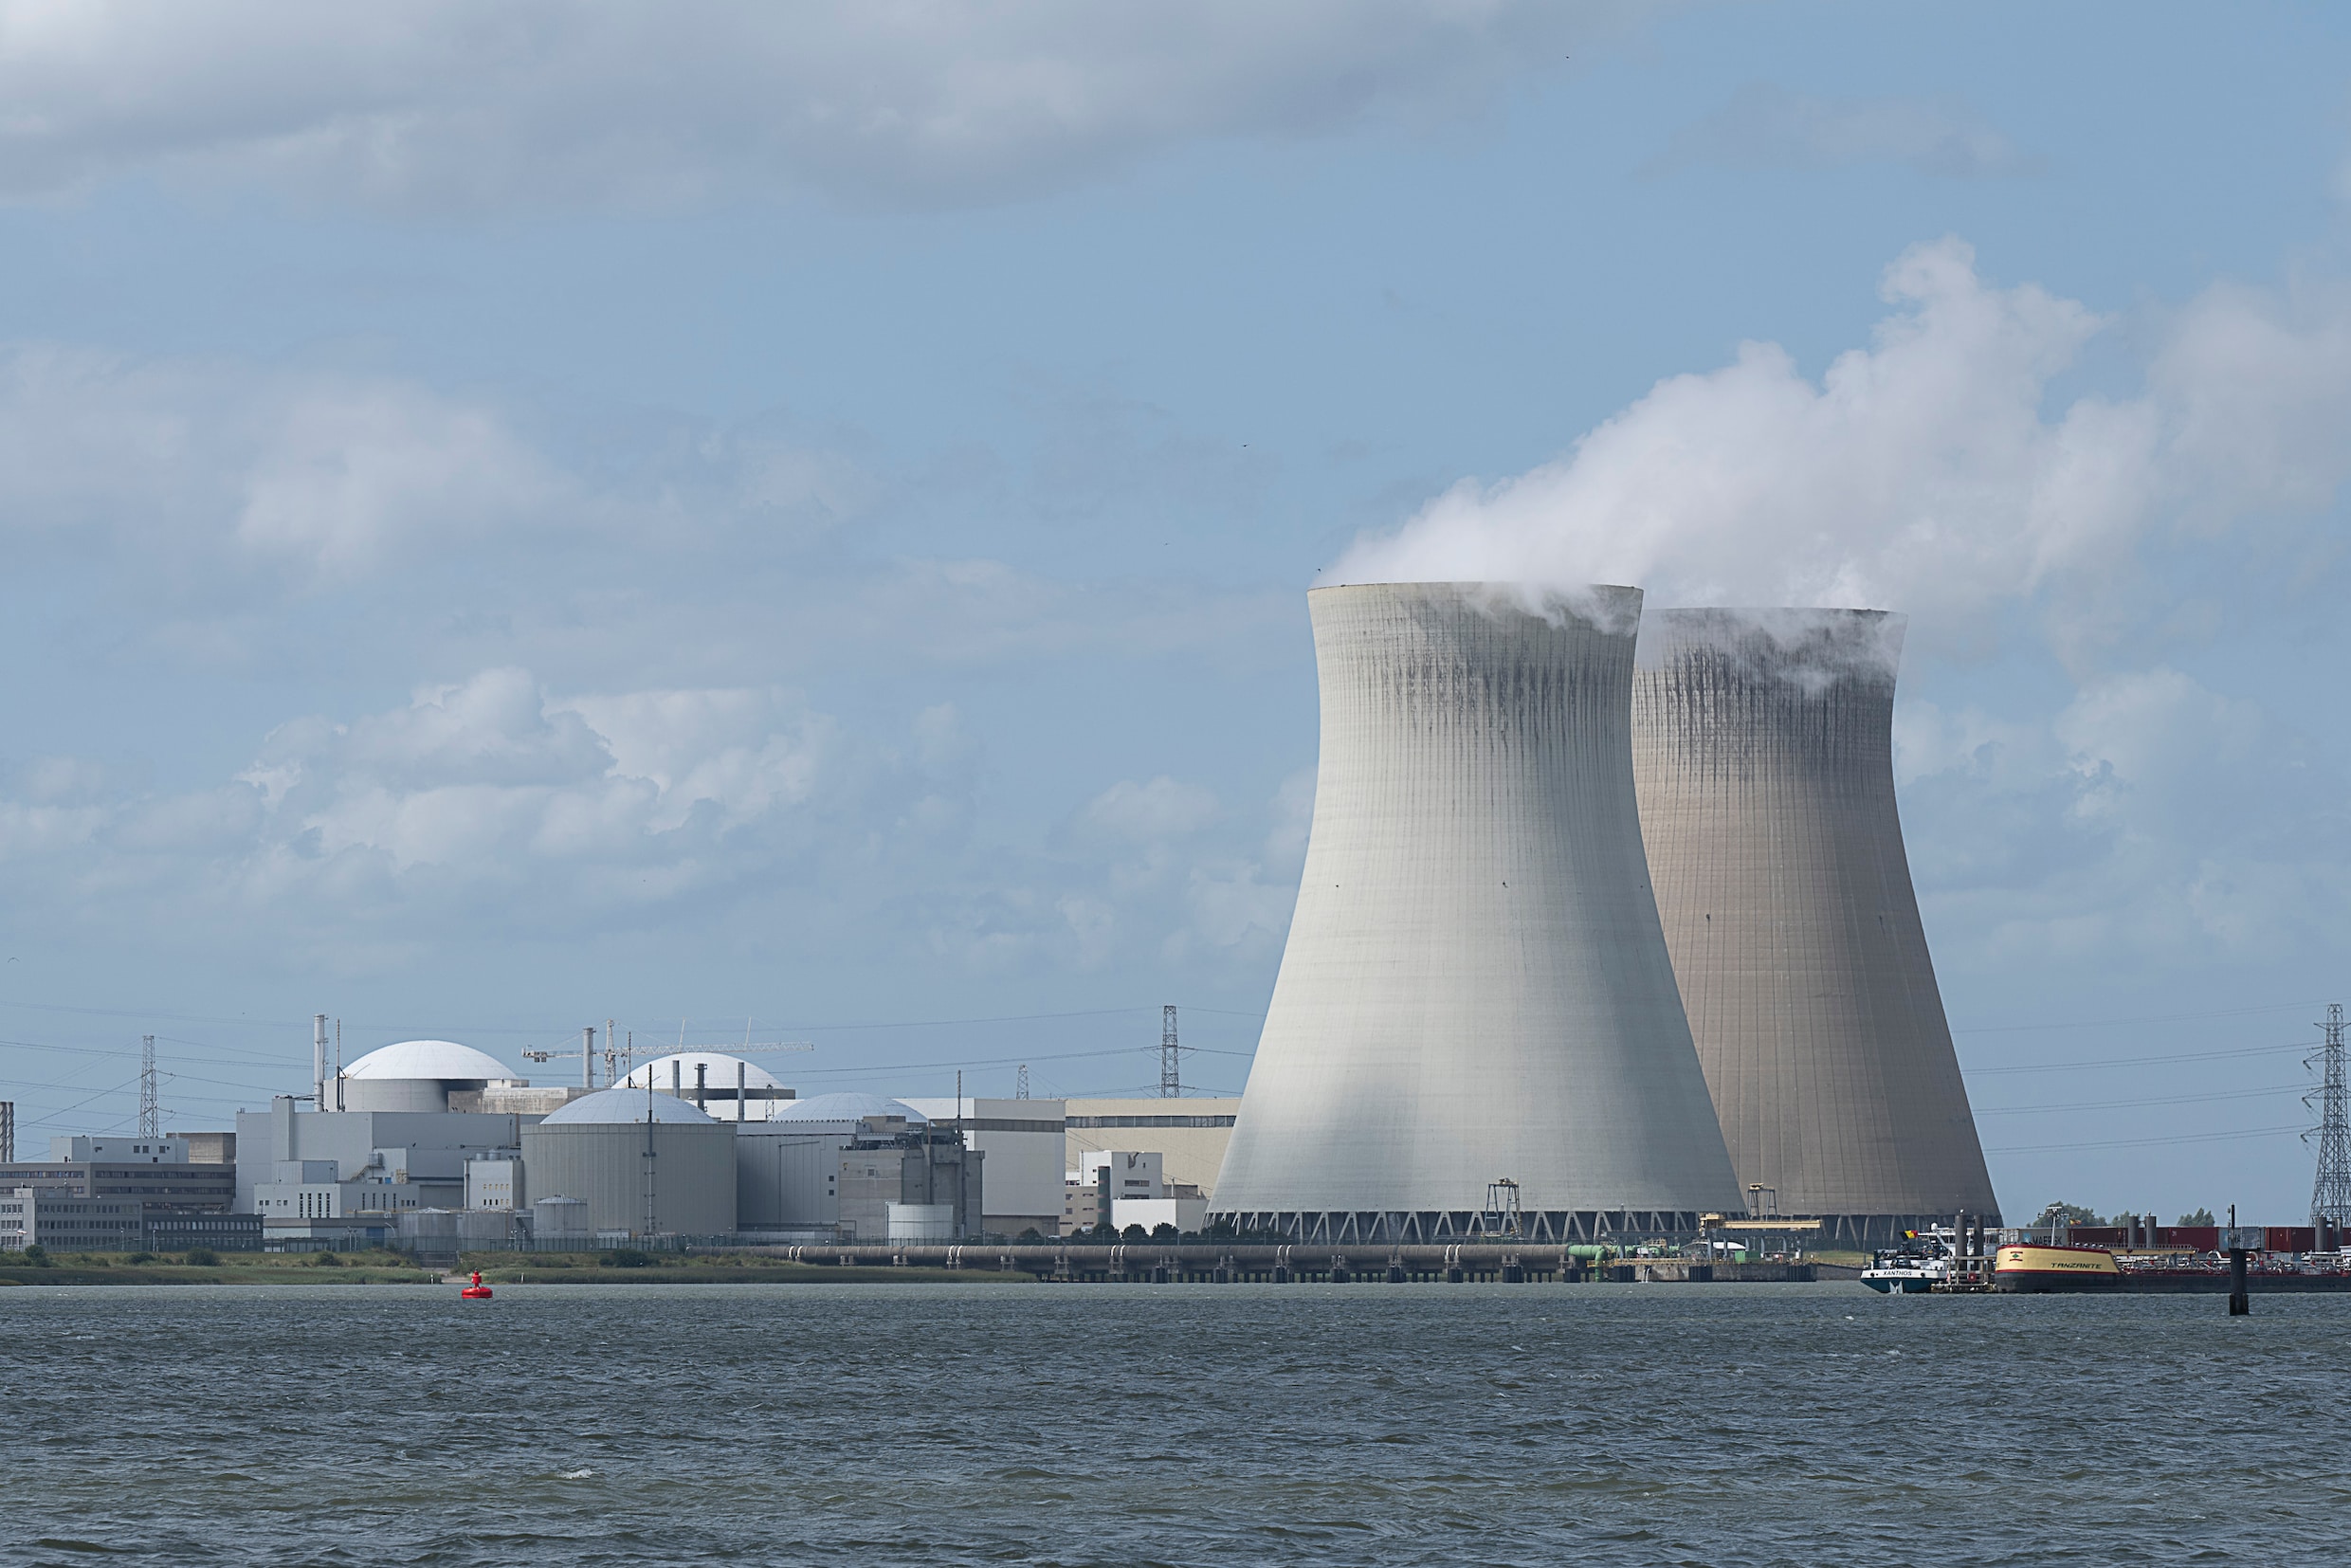 Blijft kerncentrale stand-by? Regering wil ontmanteling Doel 3 uitstellen